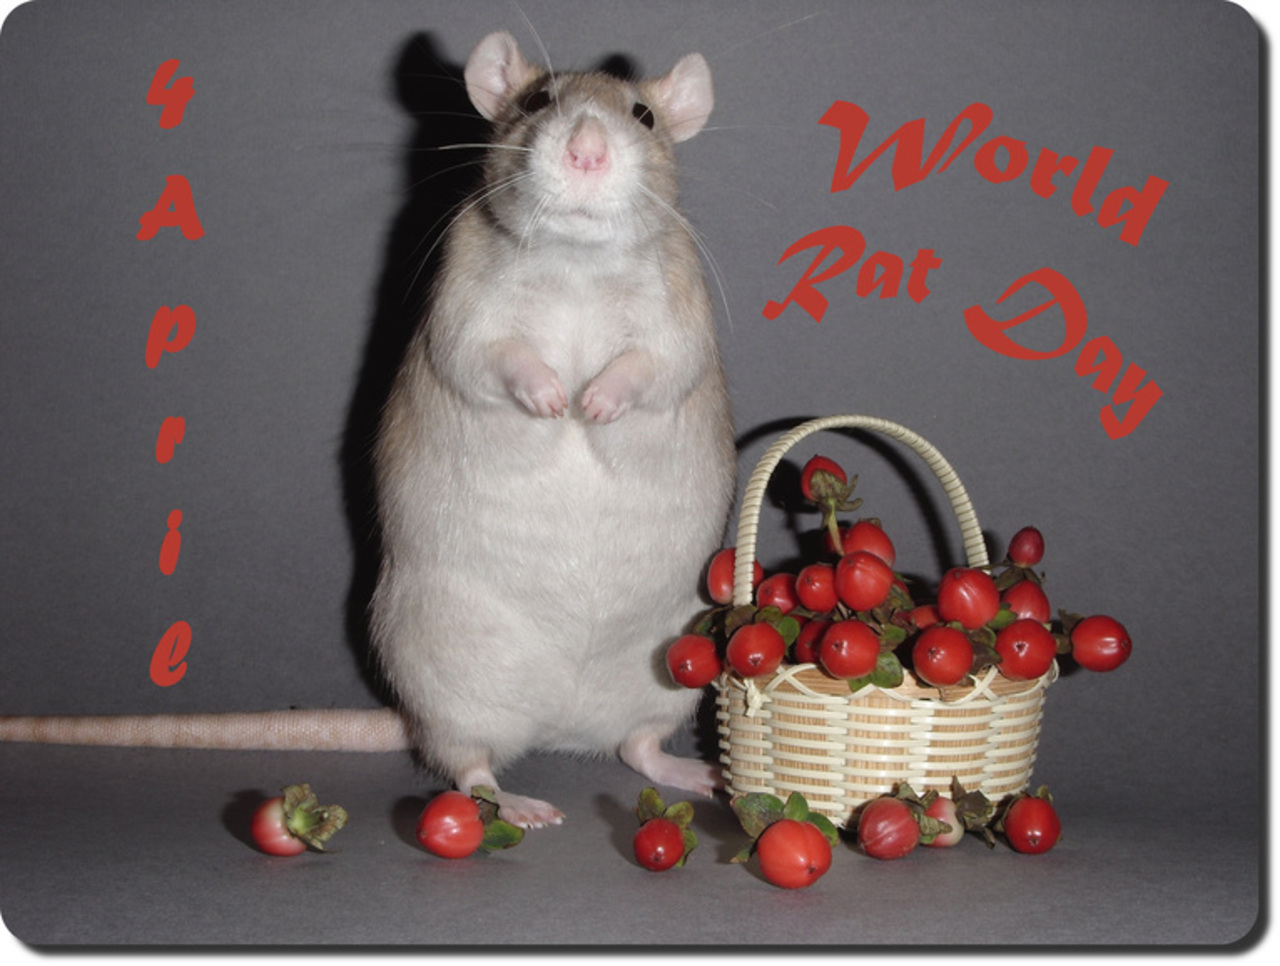 День крысы 4 апреля картинки